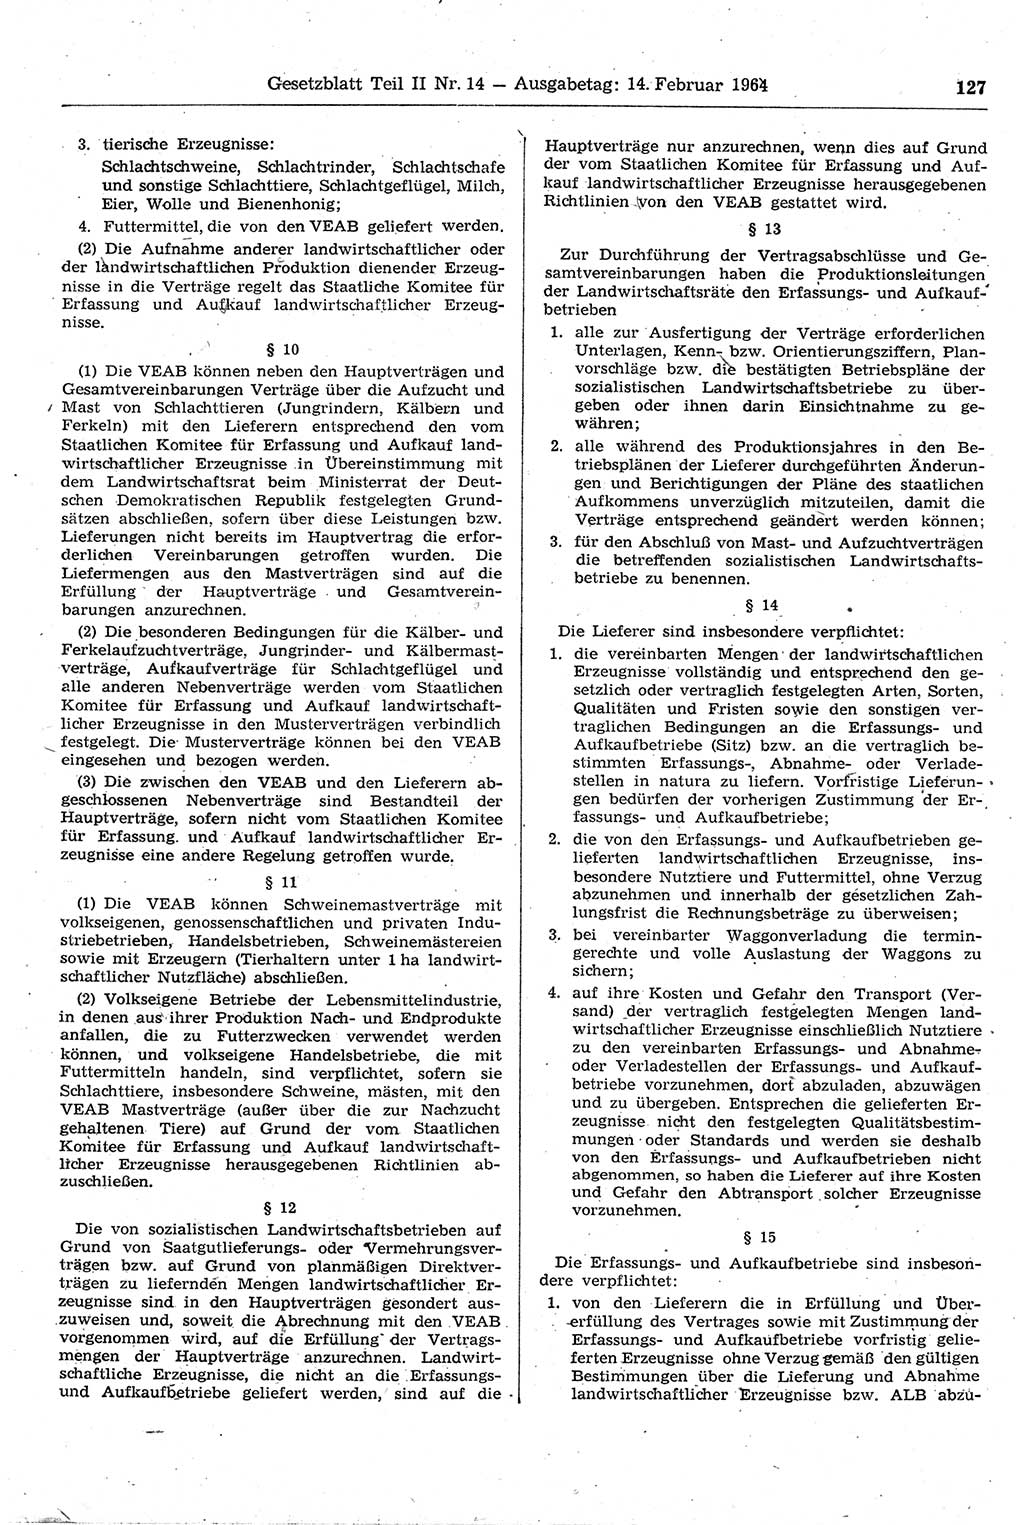 Gesetzblatt (GBl.) der Deutschen Demokratischen Republik (DDR) Teil ⅠⅠ 1964, Seite 127 (GBl. DDR ⅠⅠ 1964, S. 127)